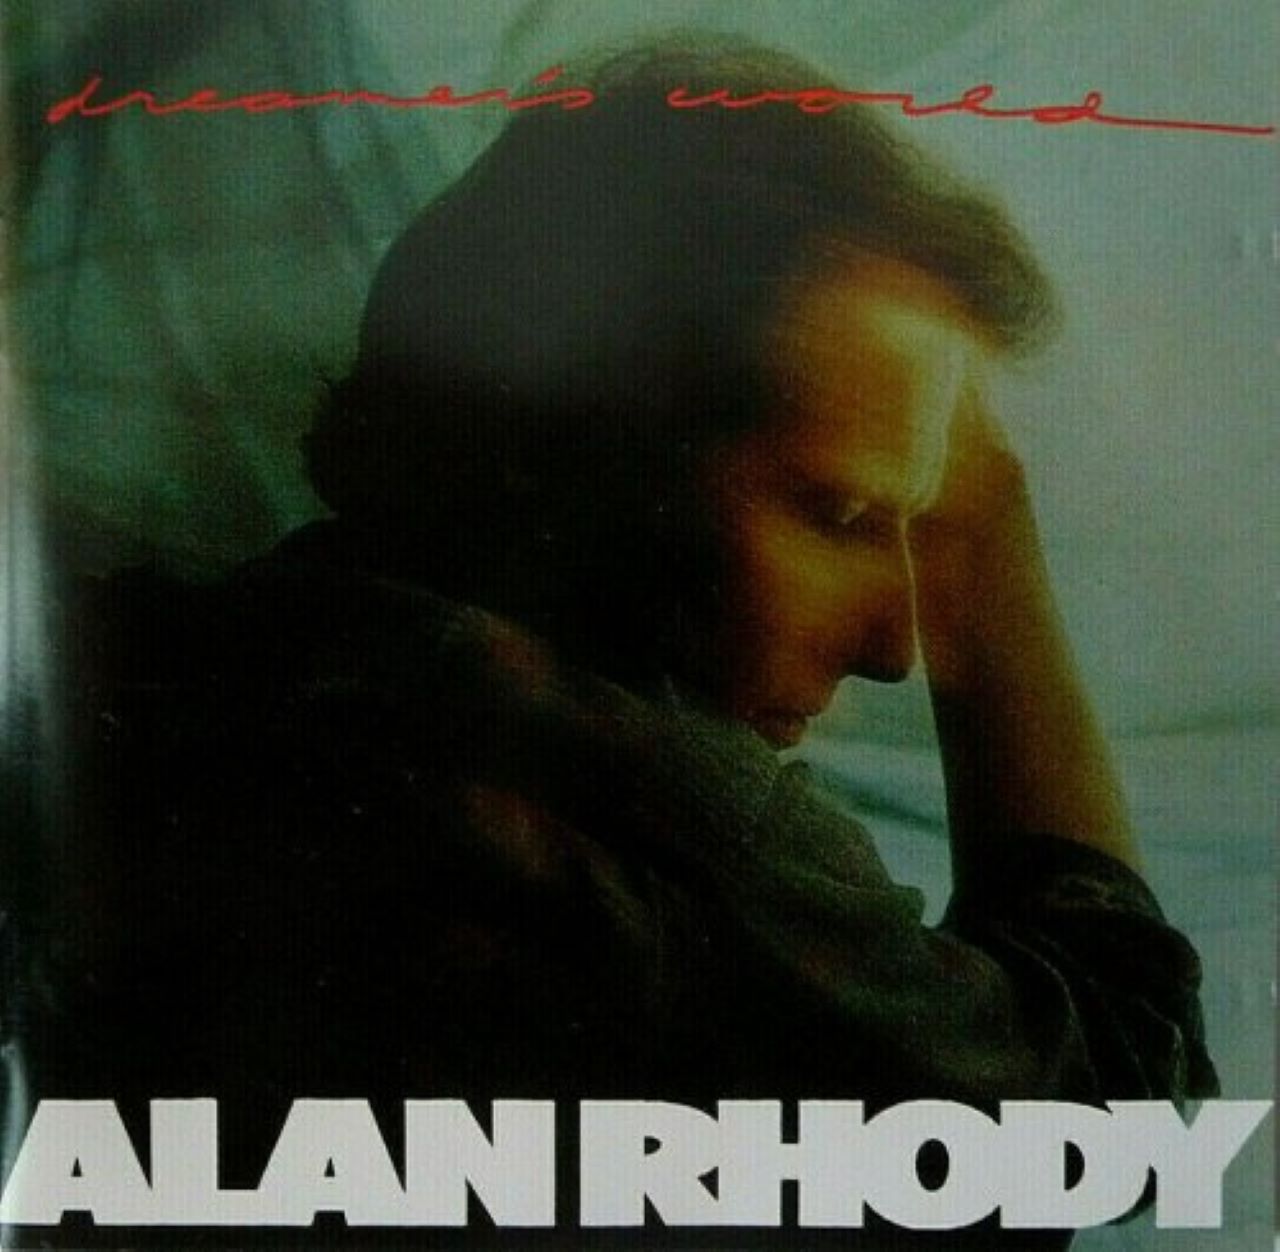 Alan Rhody – Dreamer's World cover album